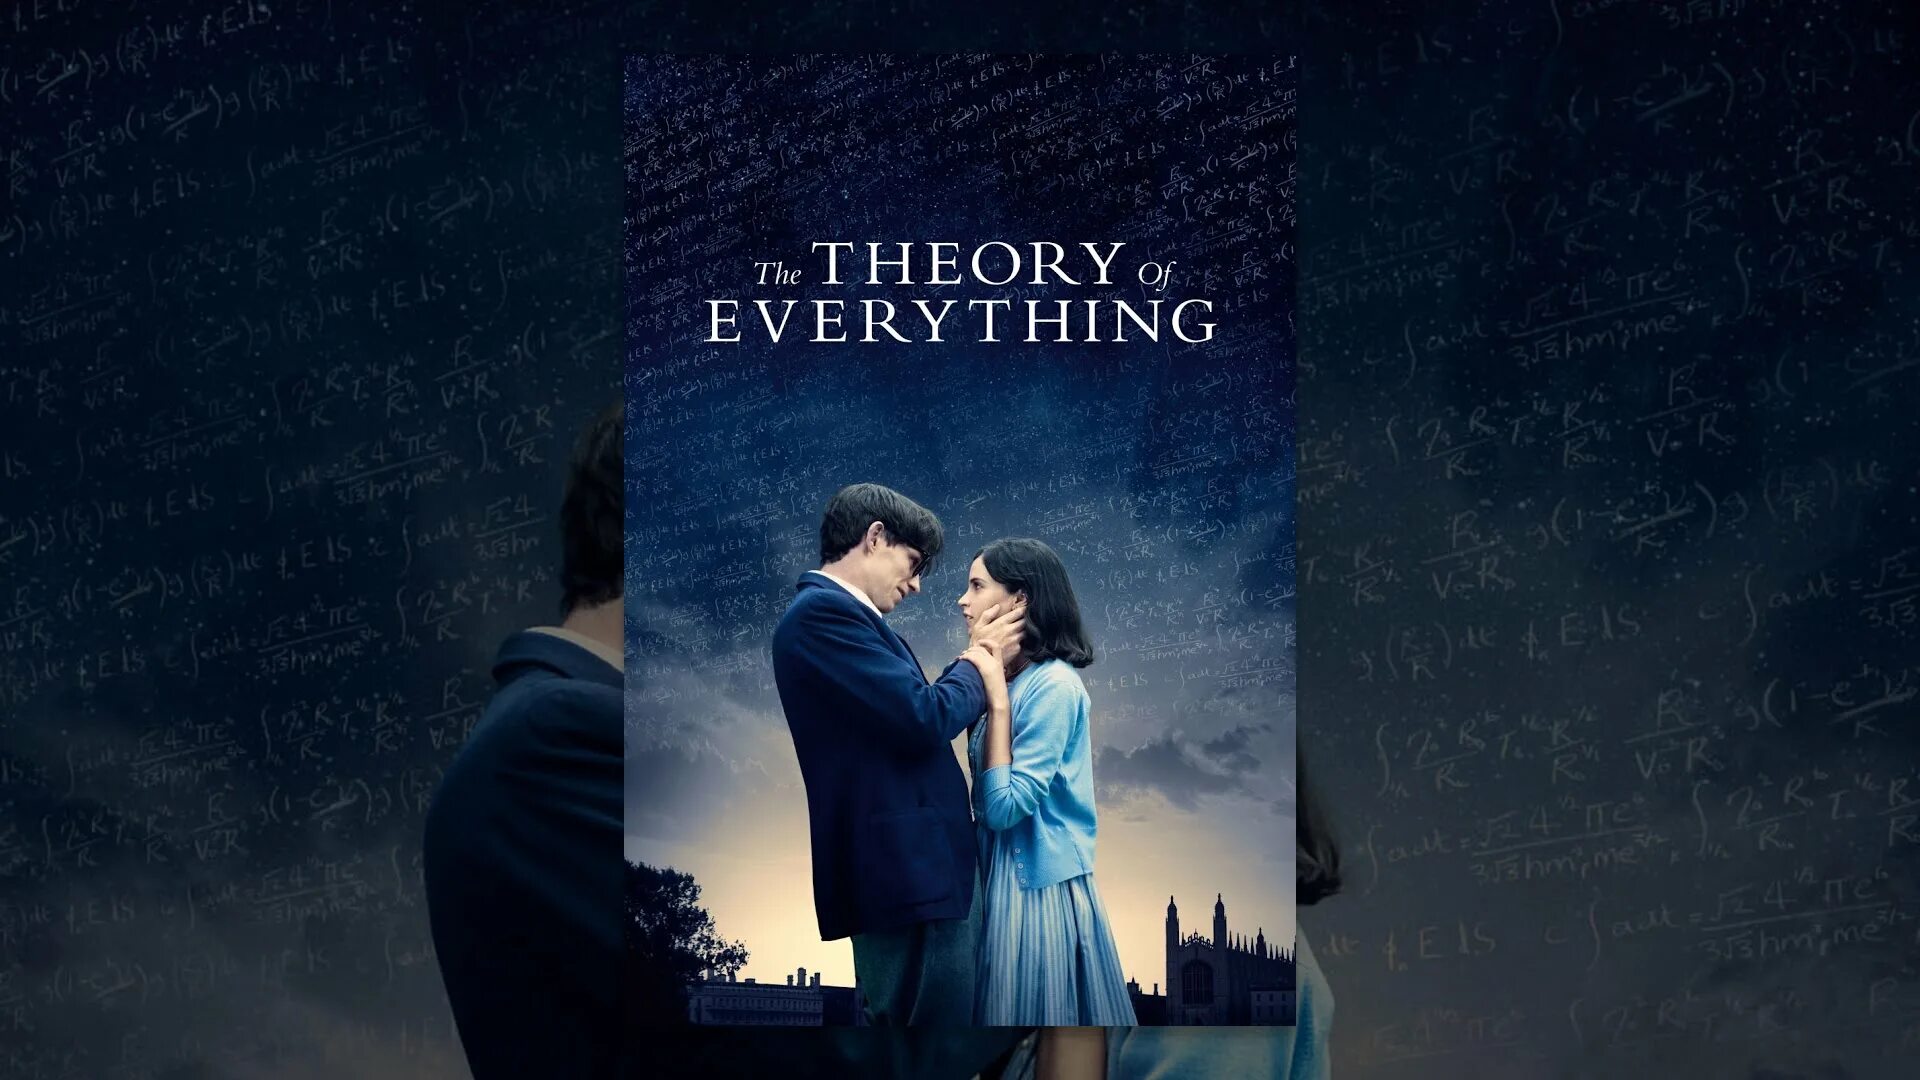 Theory of everything. Theory of everything ютуб. Theory of everything игра. Theory of everything GD. The theory of everything